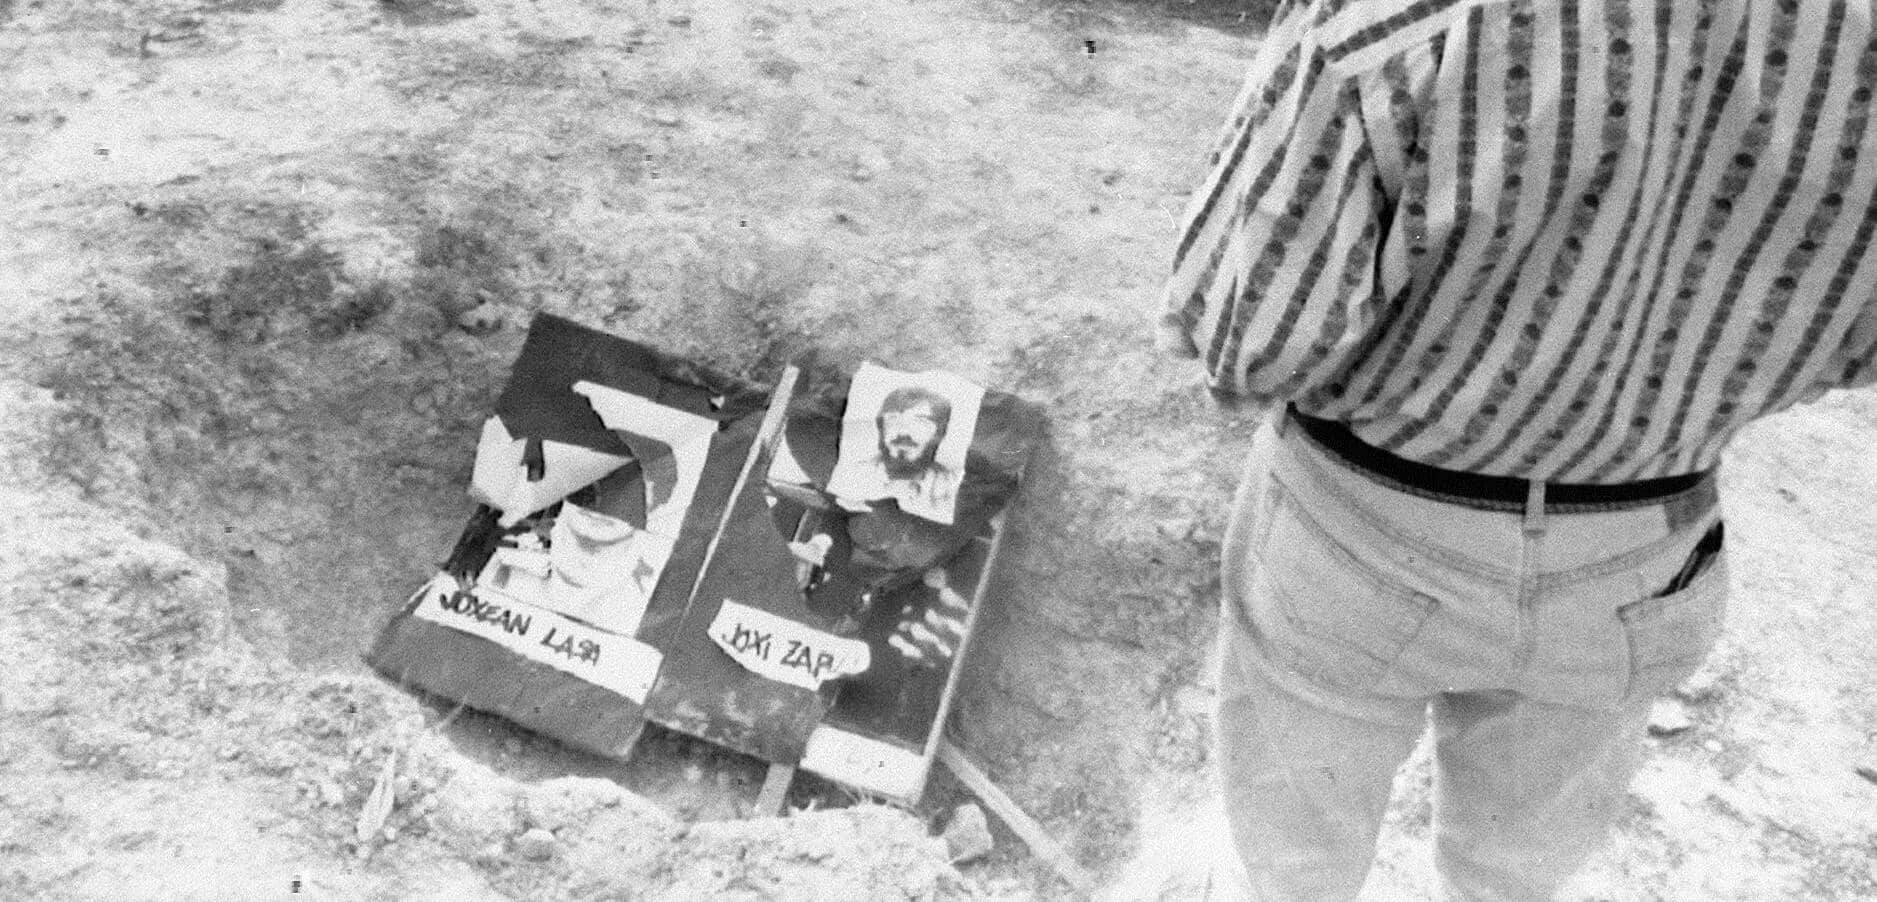 Fotos de José Antonio Lasa y José Ignacio Zabala, presuntos miembros de ETA, colocadas en la fosa donde se descubrieron sus cadáveres. Busot...